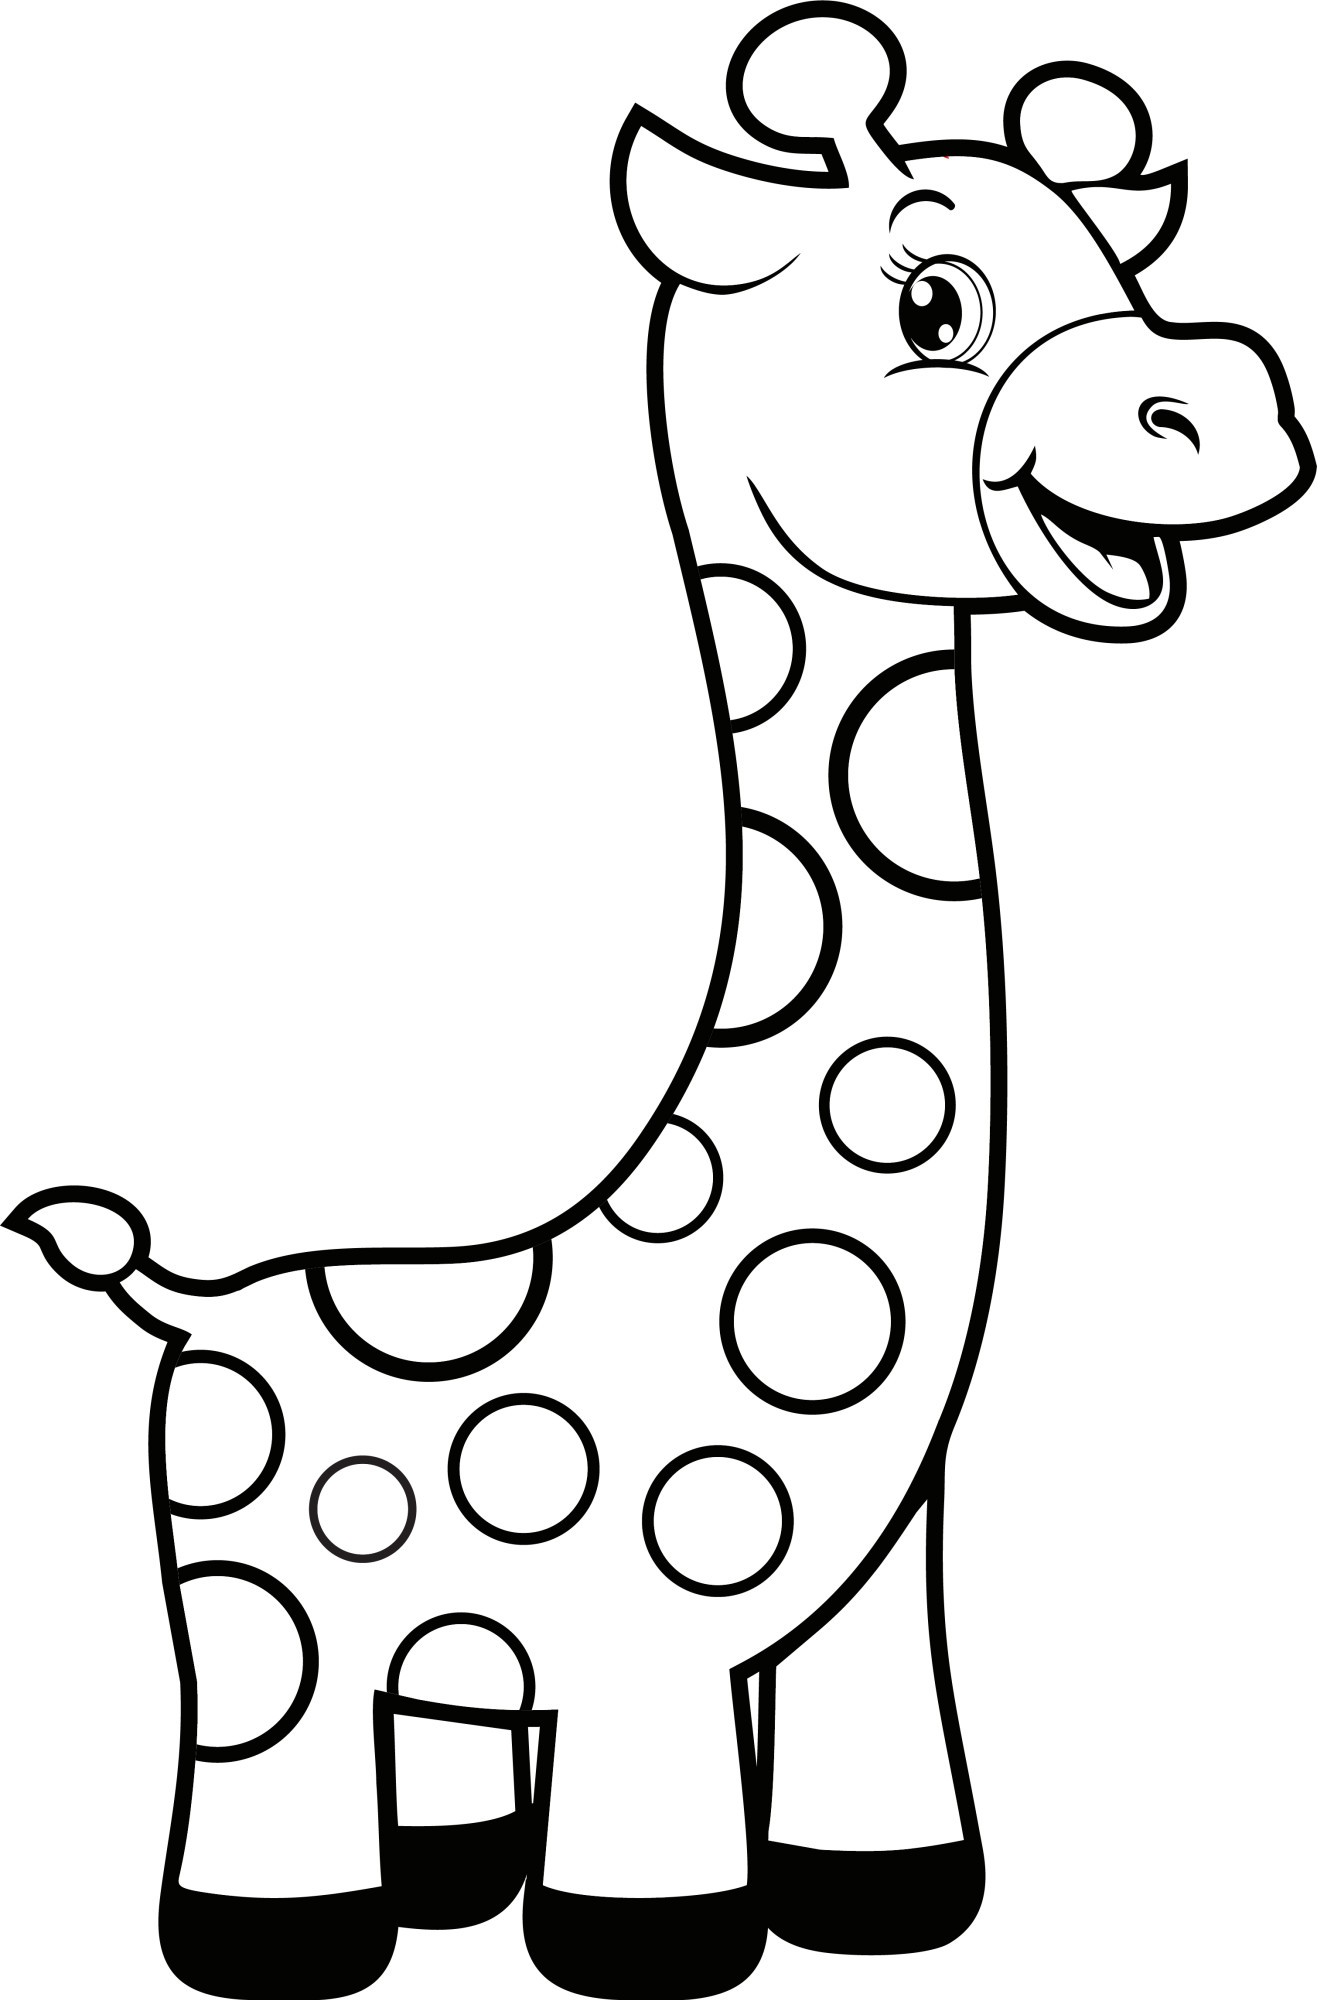 Раскраска для детей: игрушка жираф